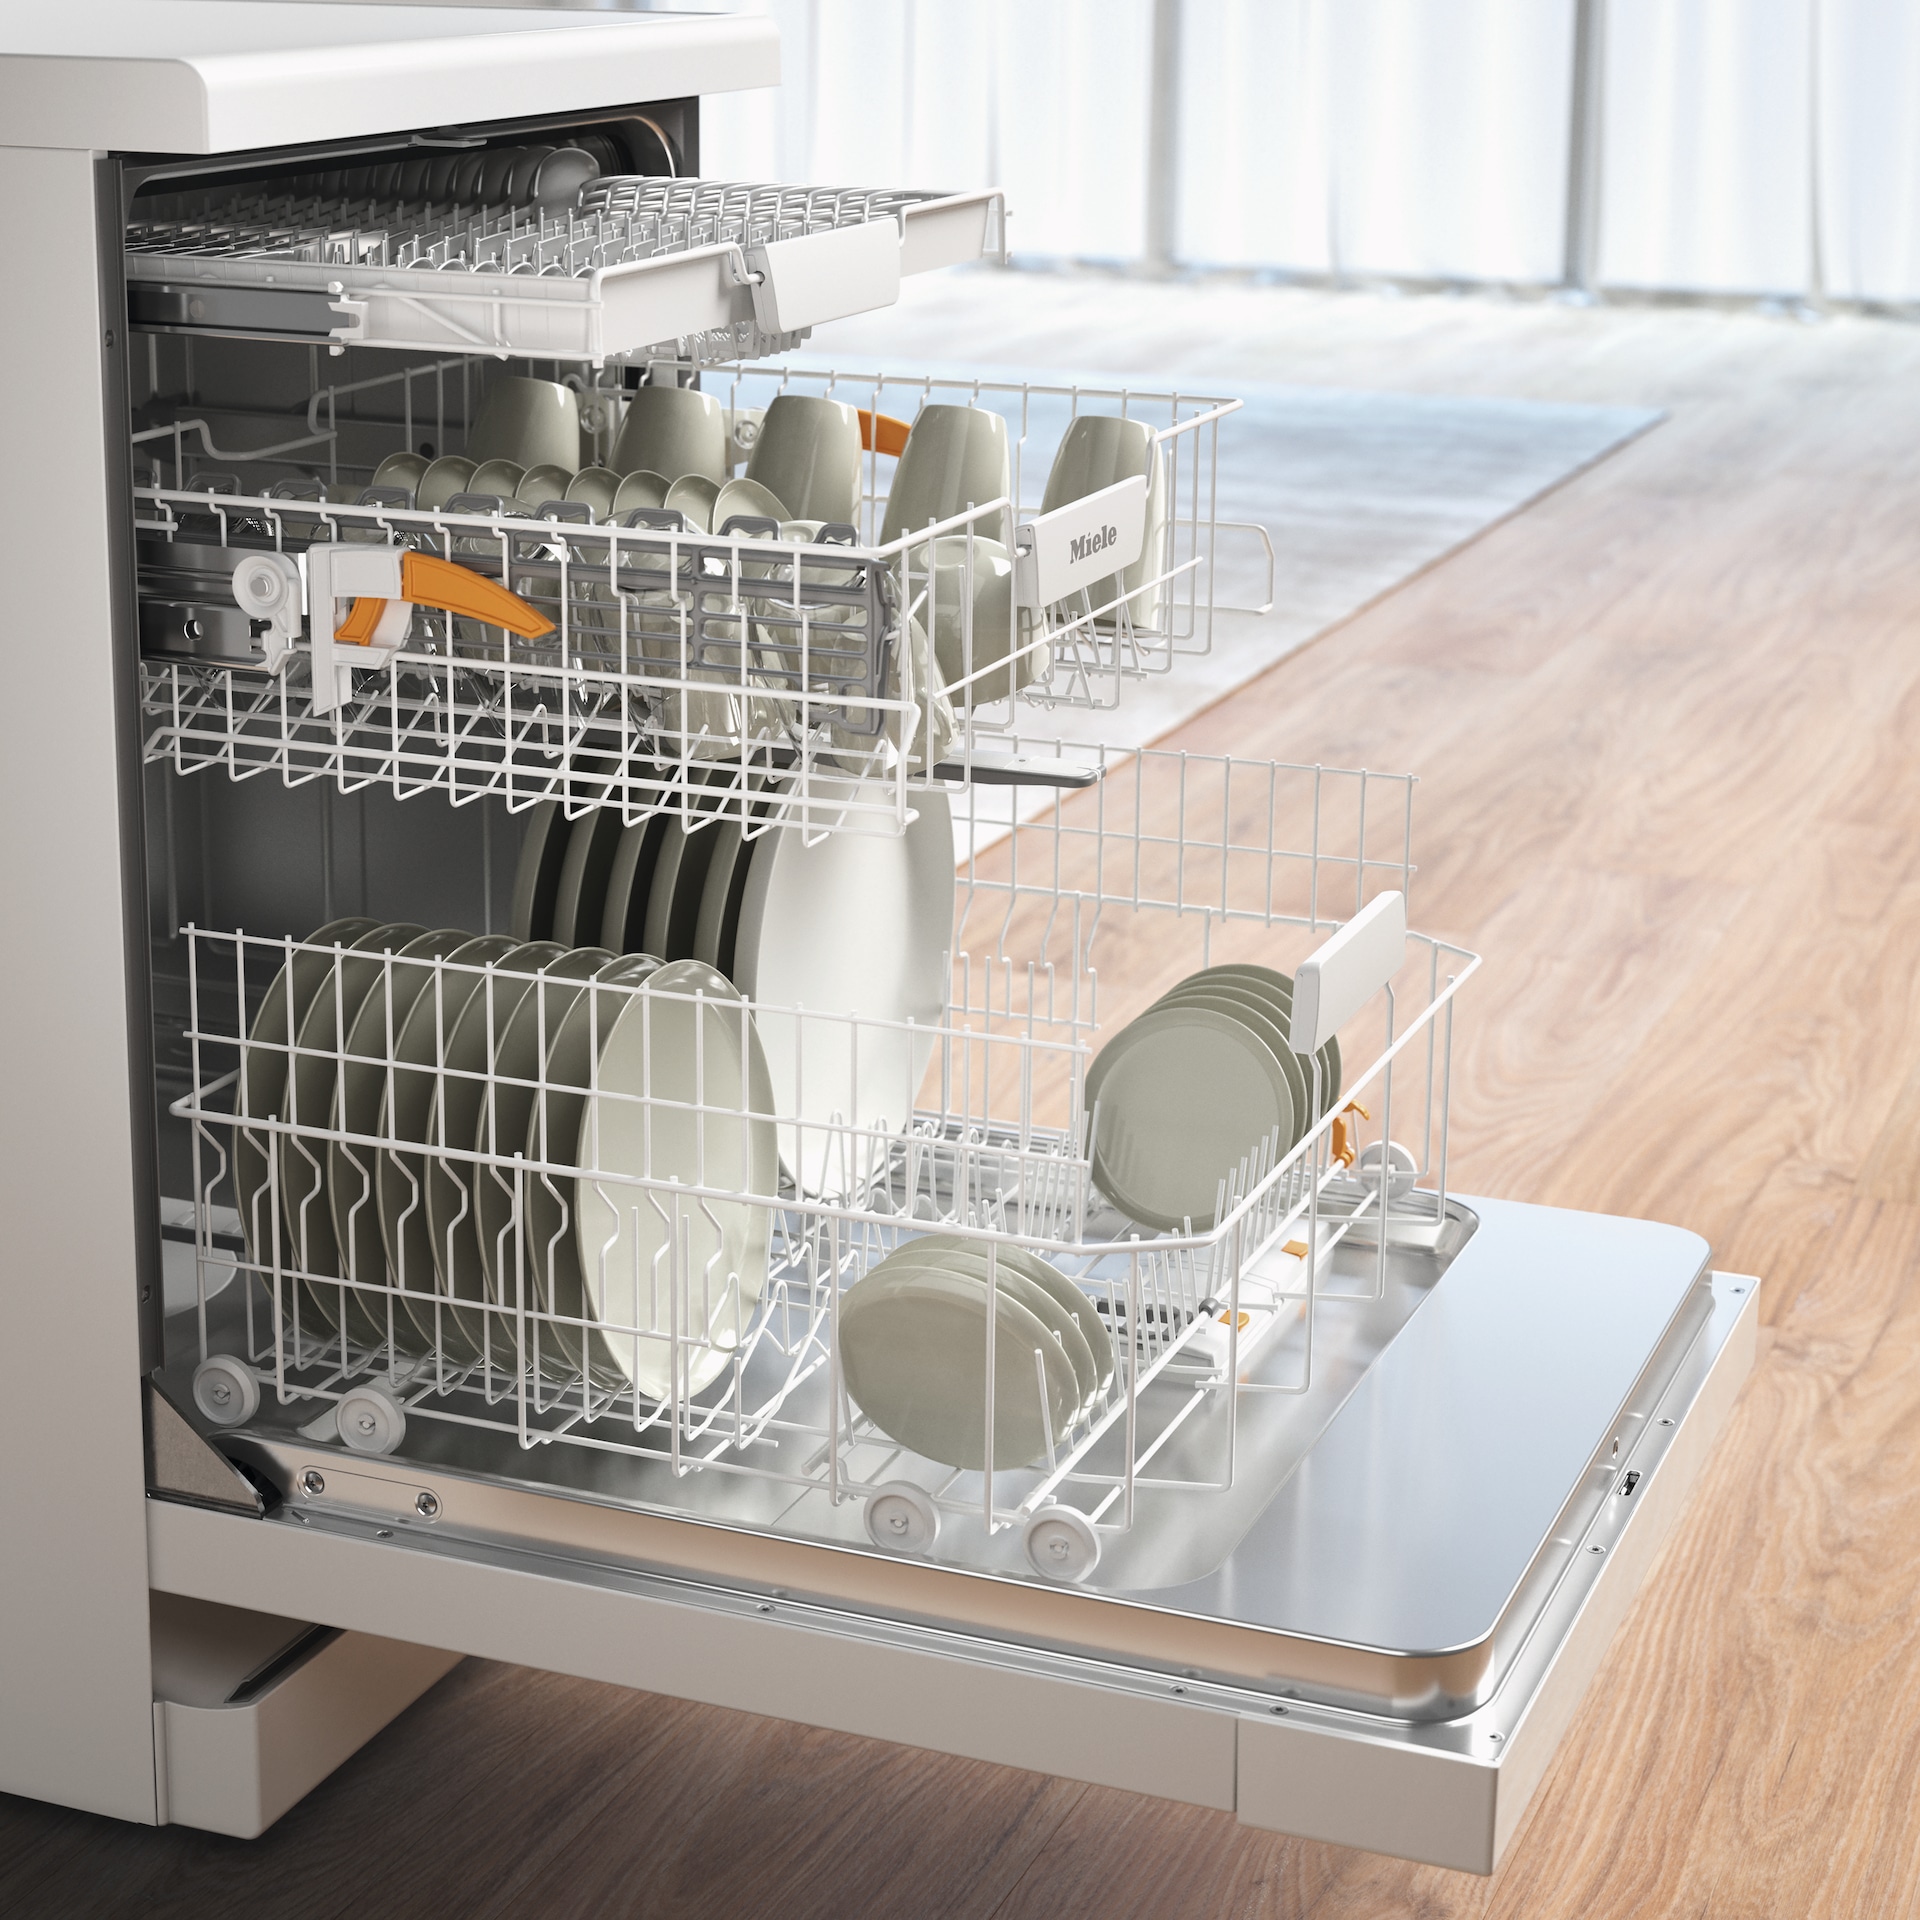 Dishwashers - G 5110 SC Active Brilliant White - 4